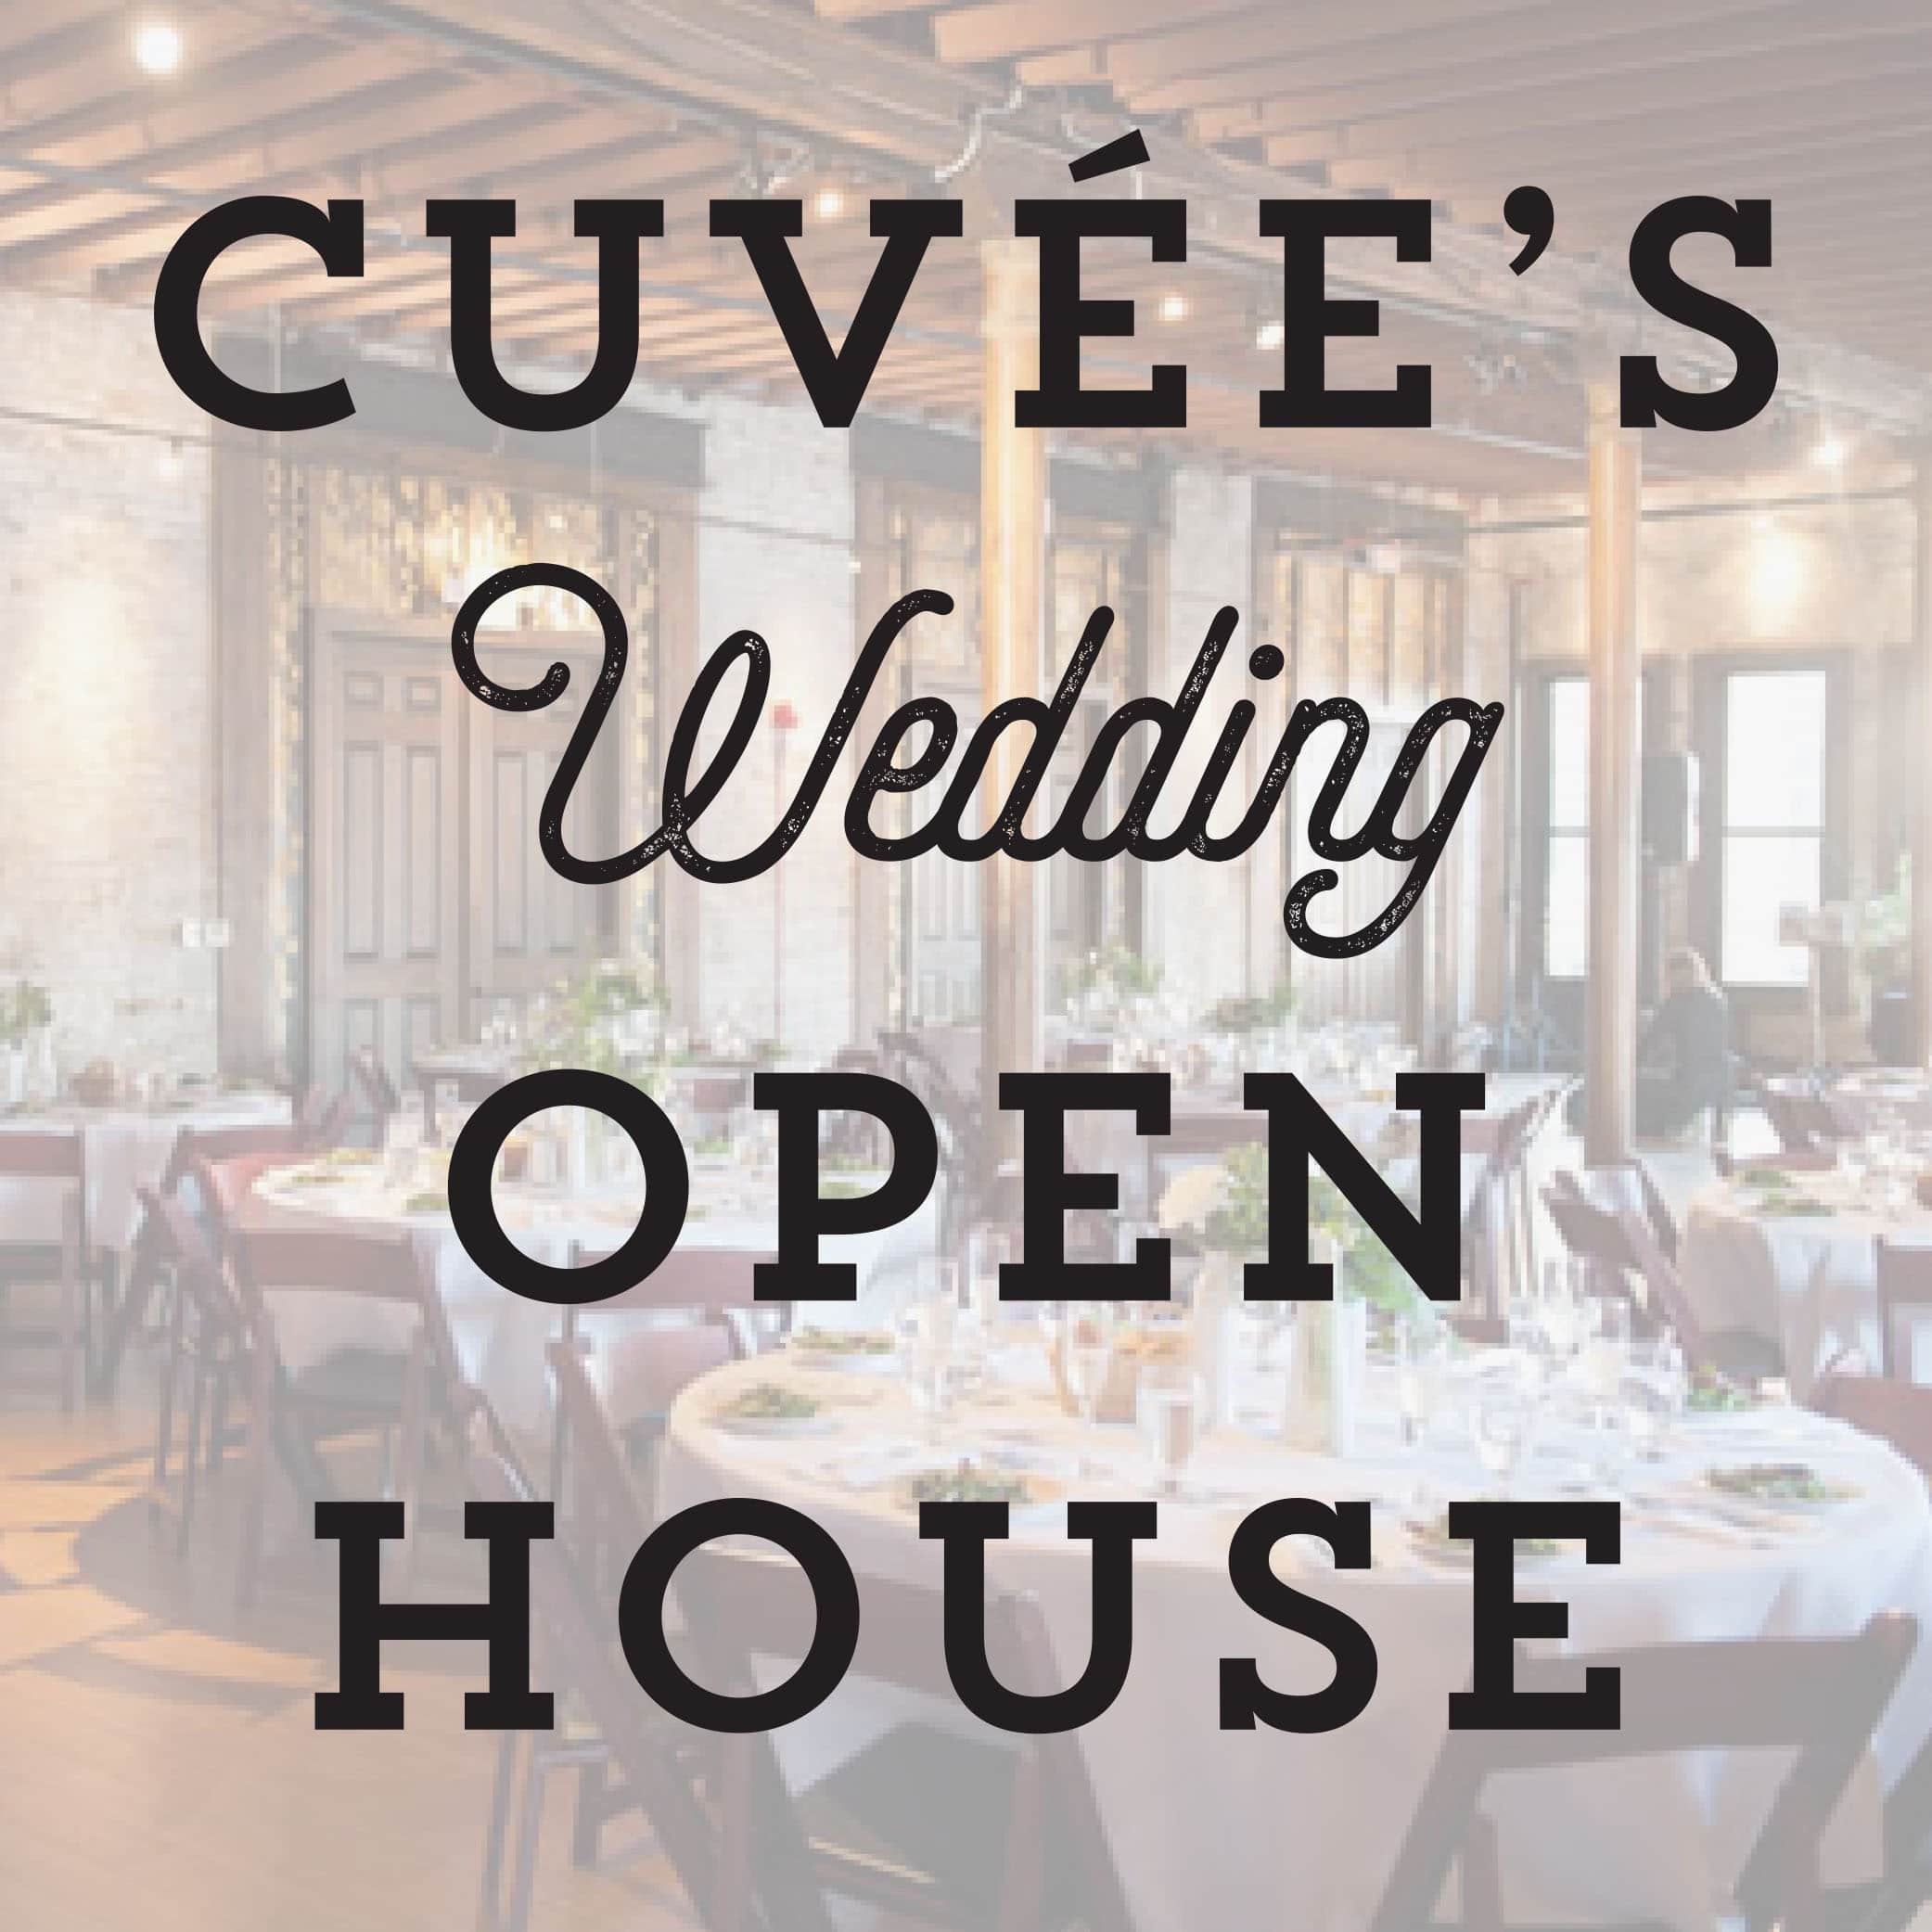 Cuvee's wedding open house